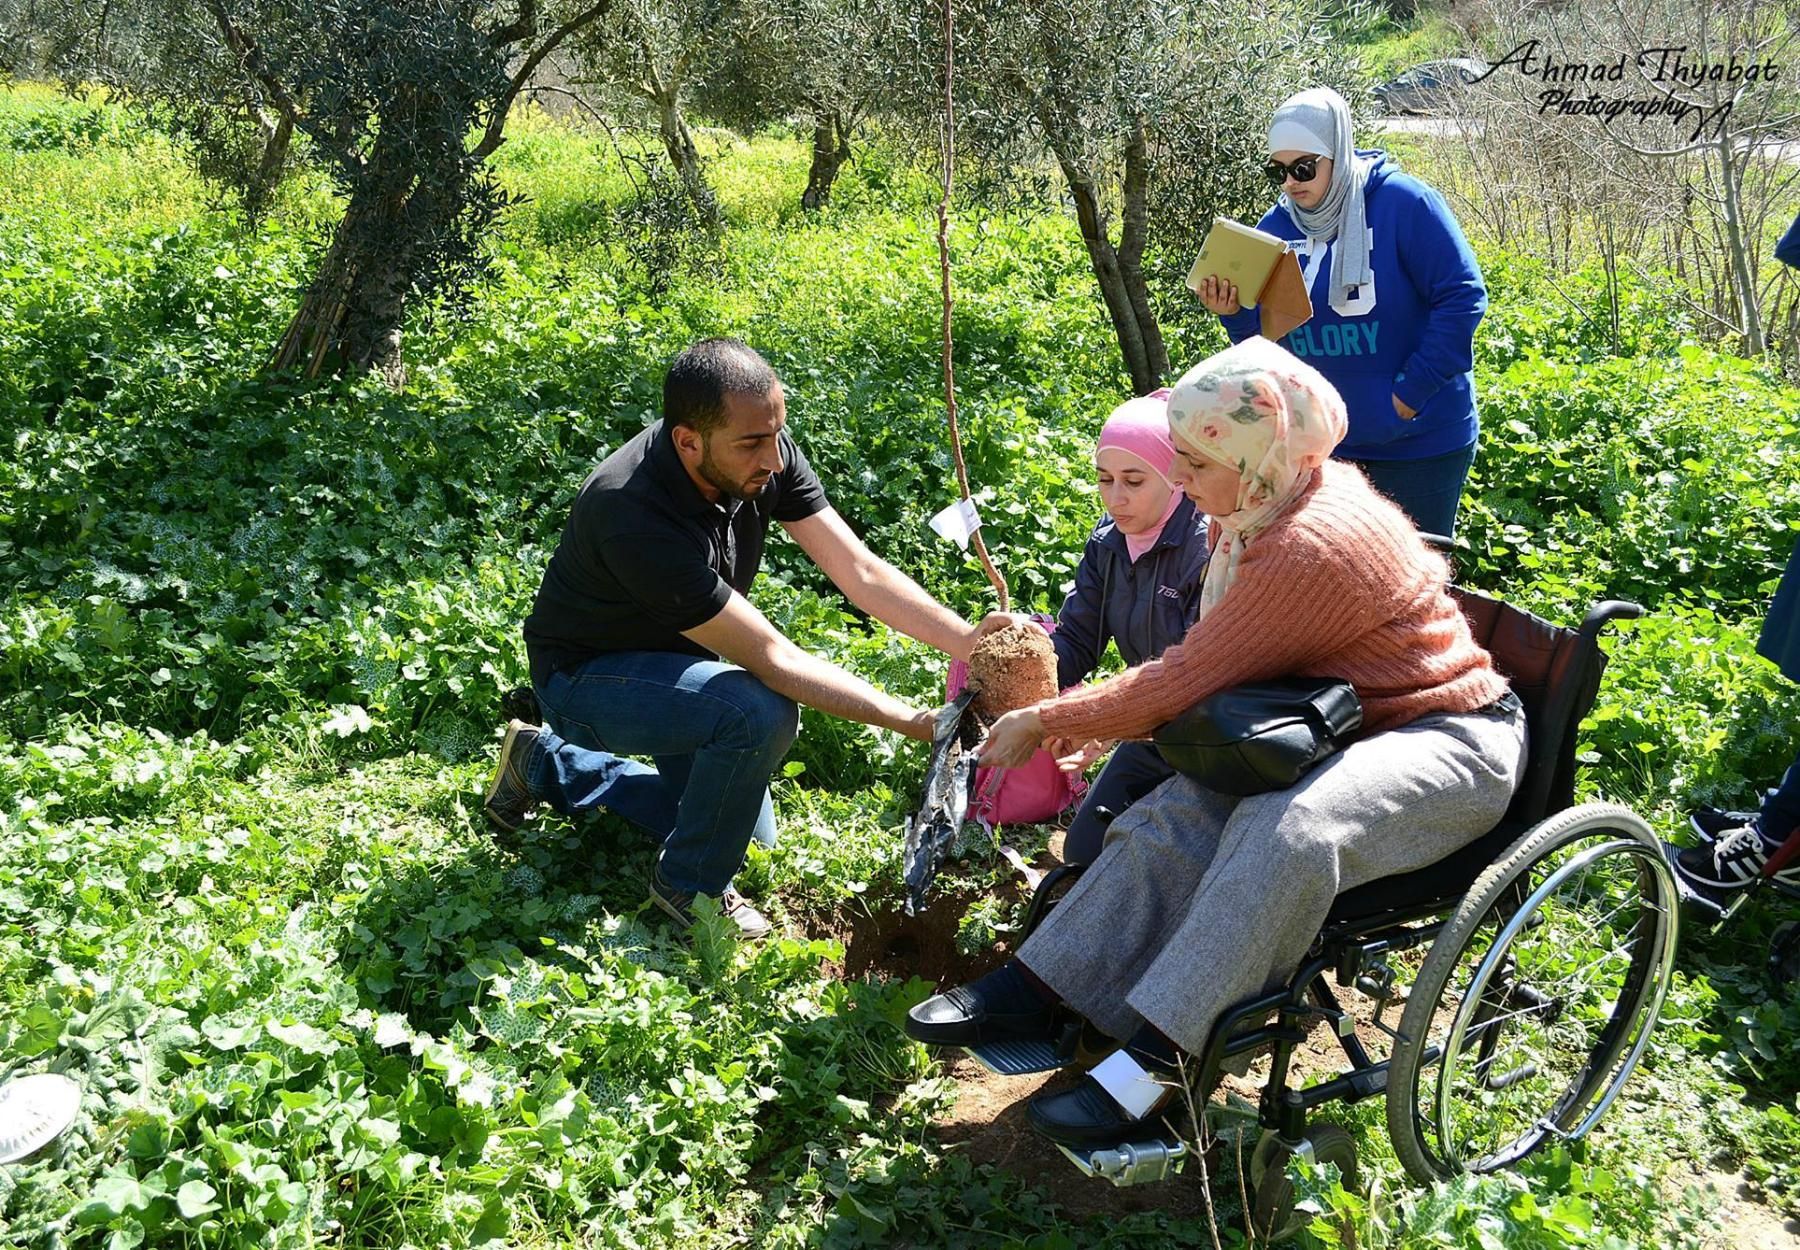 برنامج القافلة الخضراء يحتضن نشاط زراعي ميسر للأشخاص ذوي الإعاقة في إربد